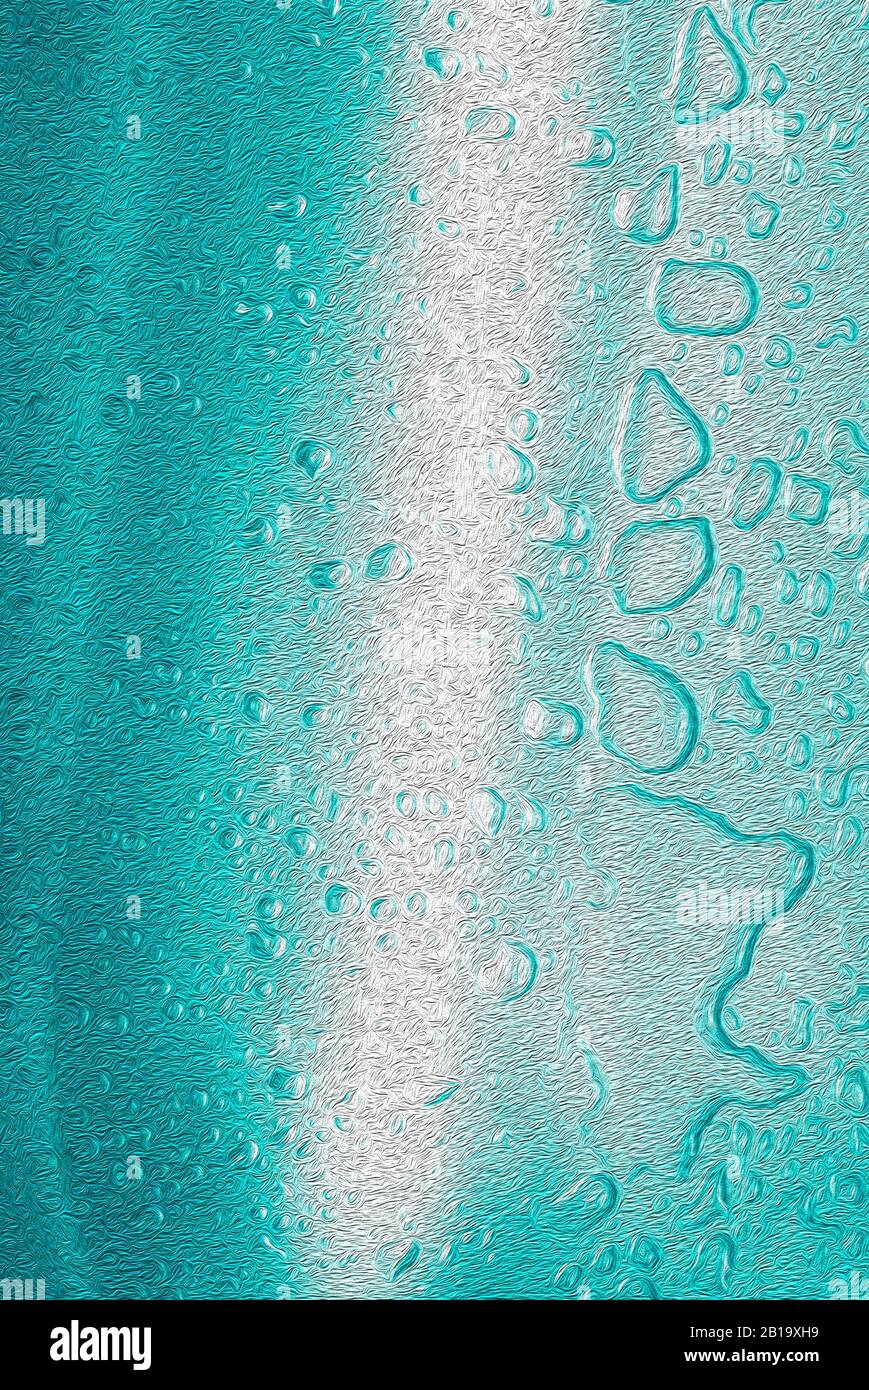 AQUARIUM: Sitzende Wasser in einem Edelstahl-Waschbecken hat Farbverstärkung und digitale Ölfarbe Anwendung, um eine aquatische neonblaue Hintergrund zu erstellen. Stockfoto